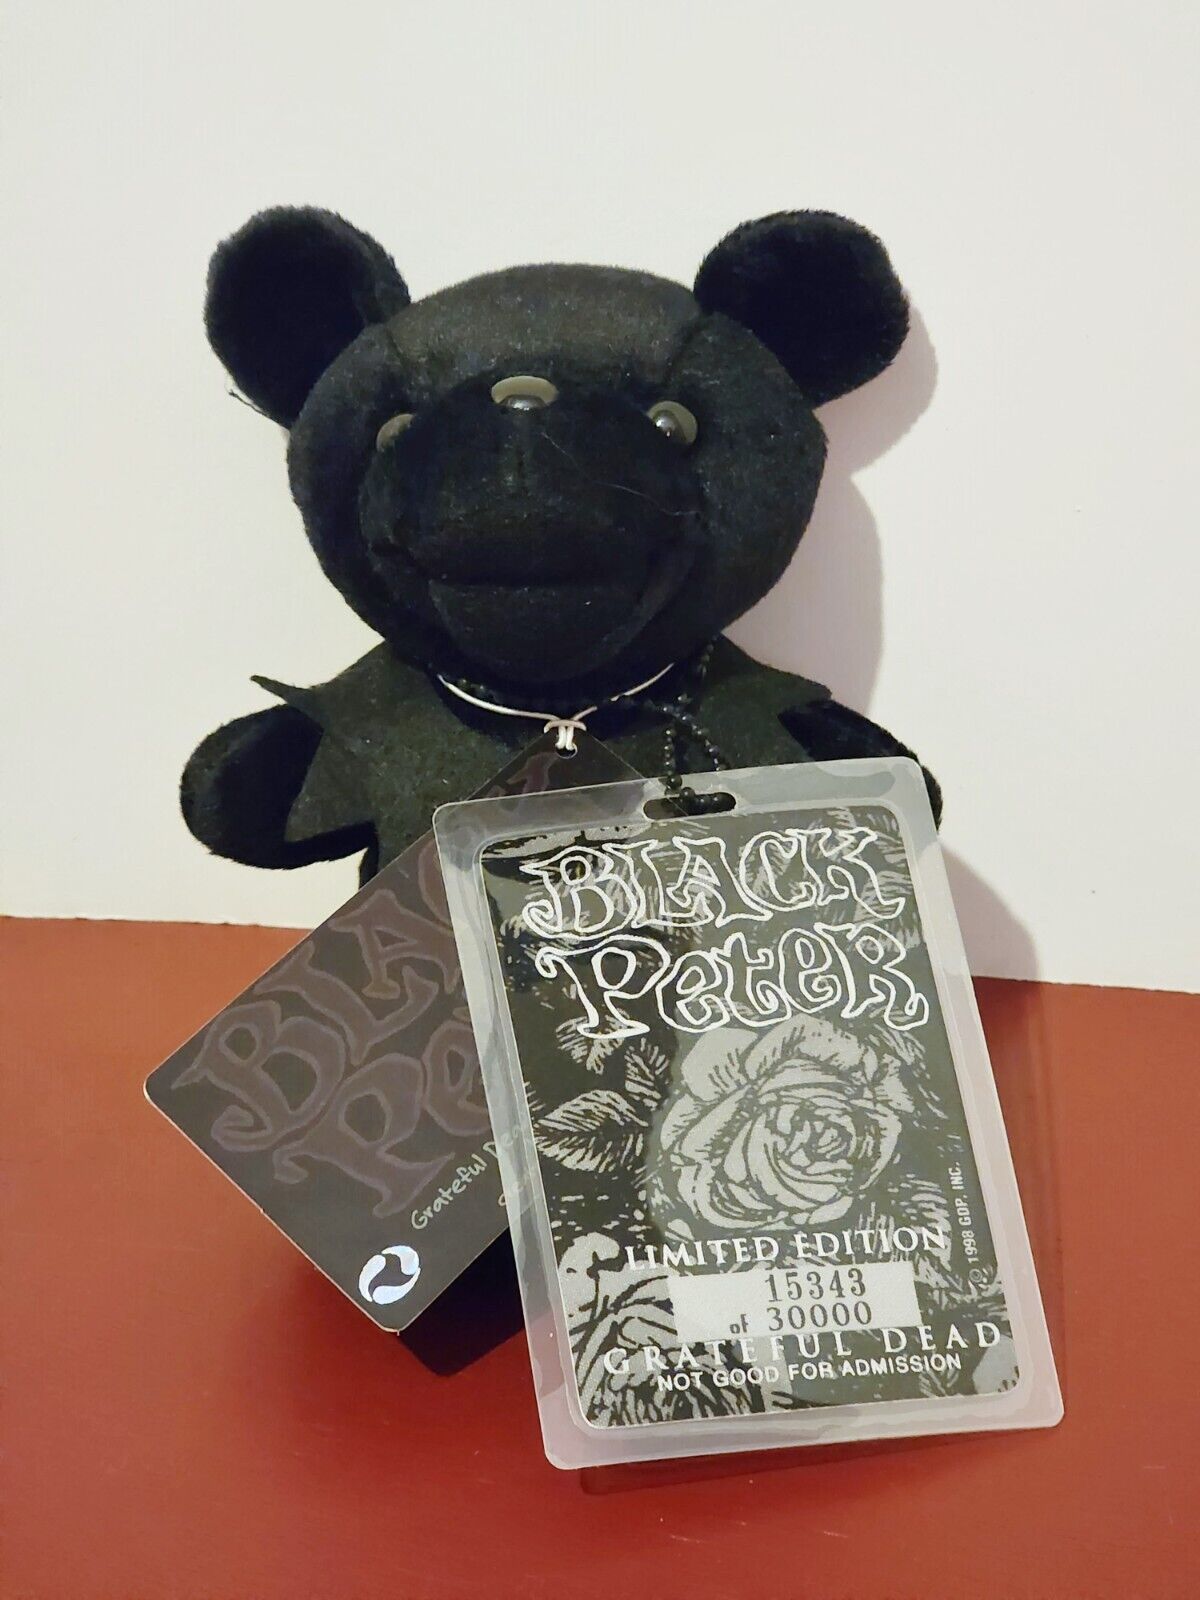 Grateful Dead Beanie Bear Black Peter Limited Edition 7" Plush Liquid Blue Nwt